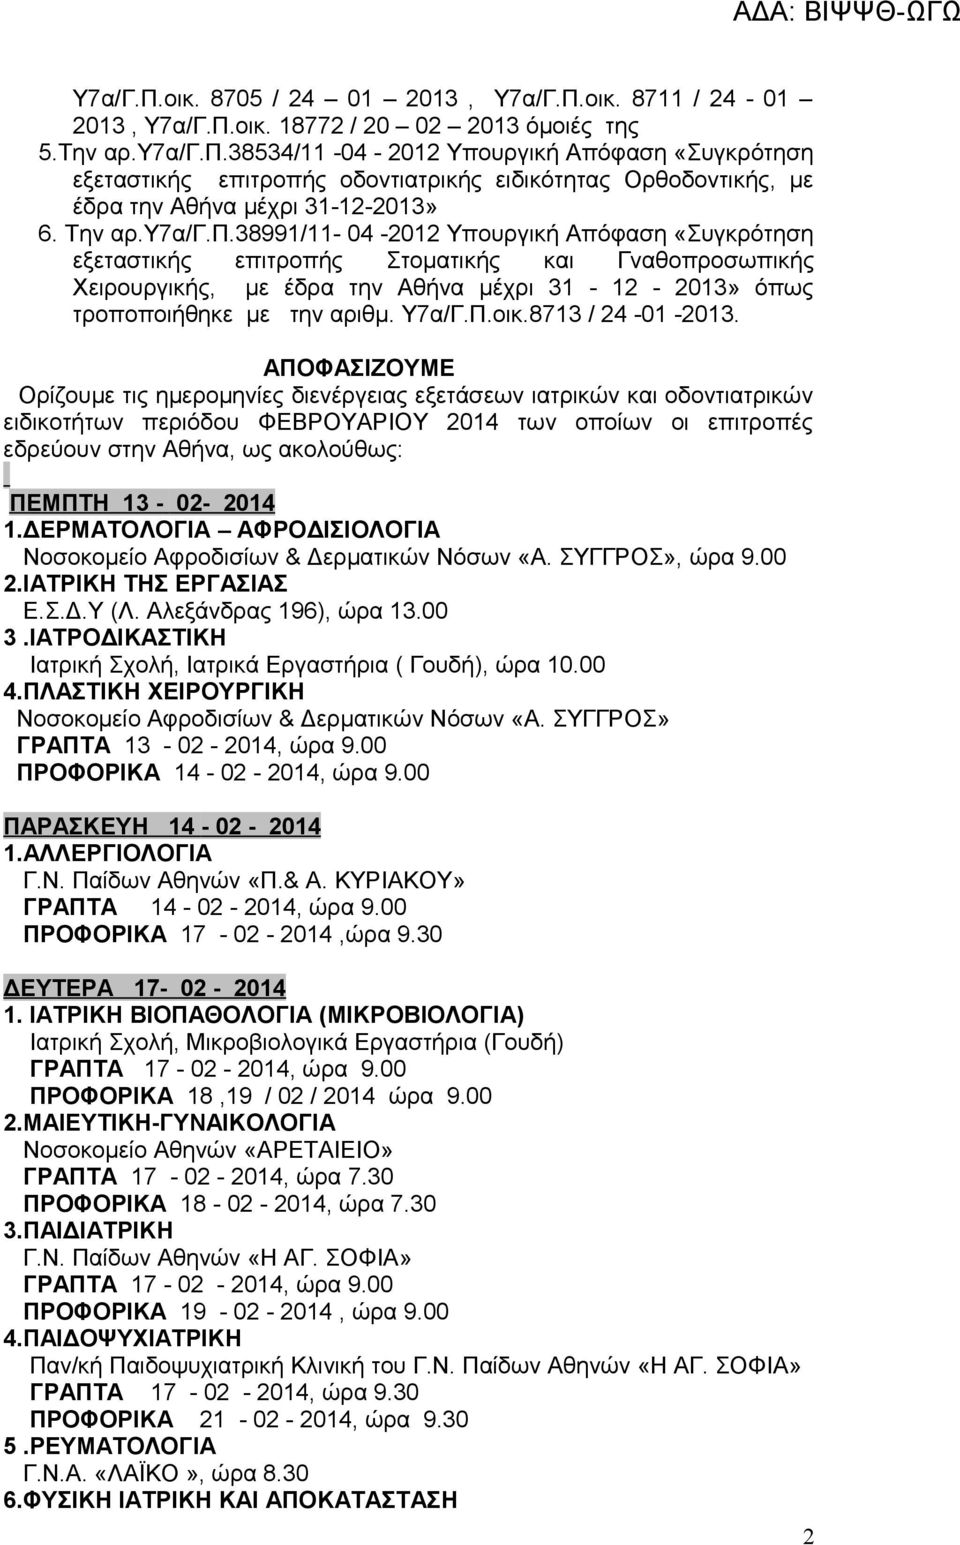 υργική Απόφαση «Συγκρότηση εξεταστικής επιτροπής οδοντιατρικής ειδικότητας Ορθοδοντικής, με έδρα την Αθήνα μέχρι 31-12-2013» 6. Την αρ.υ7α/γ.π.38991/11-04 -2012 Υπουργική Απόφαση «Συγκρότηση εξεταστικής επιτροπής Στοματικής και Γναθοπροσωπικής Χειρουργικής, με έδρα την Αθήνα μέχρι 31-12 - 2013» όπως τροποποιήθηκε με την αριθμ.